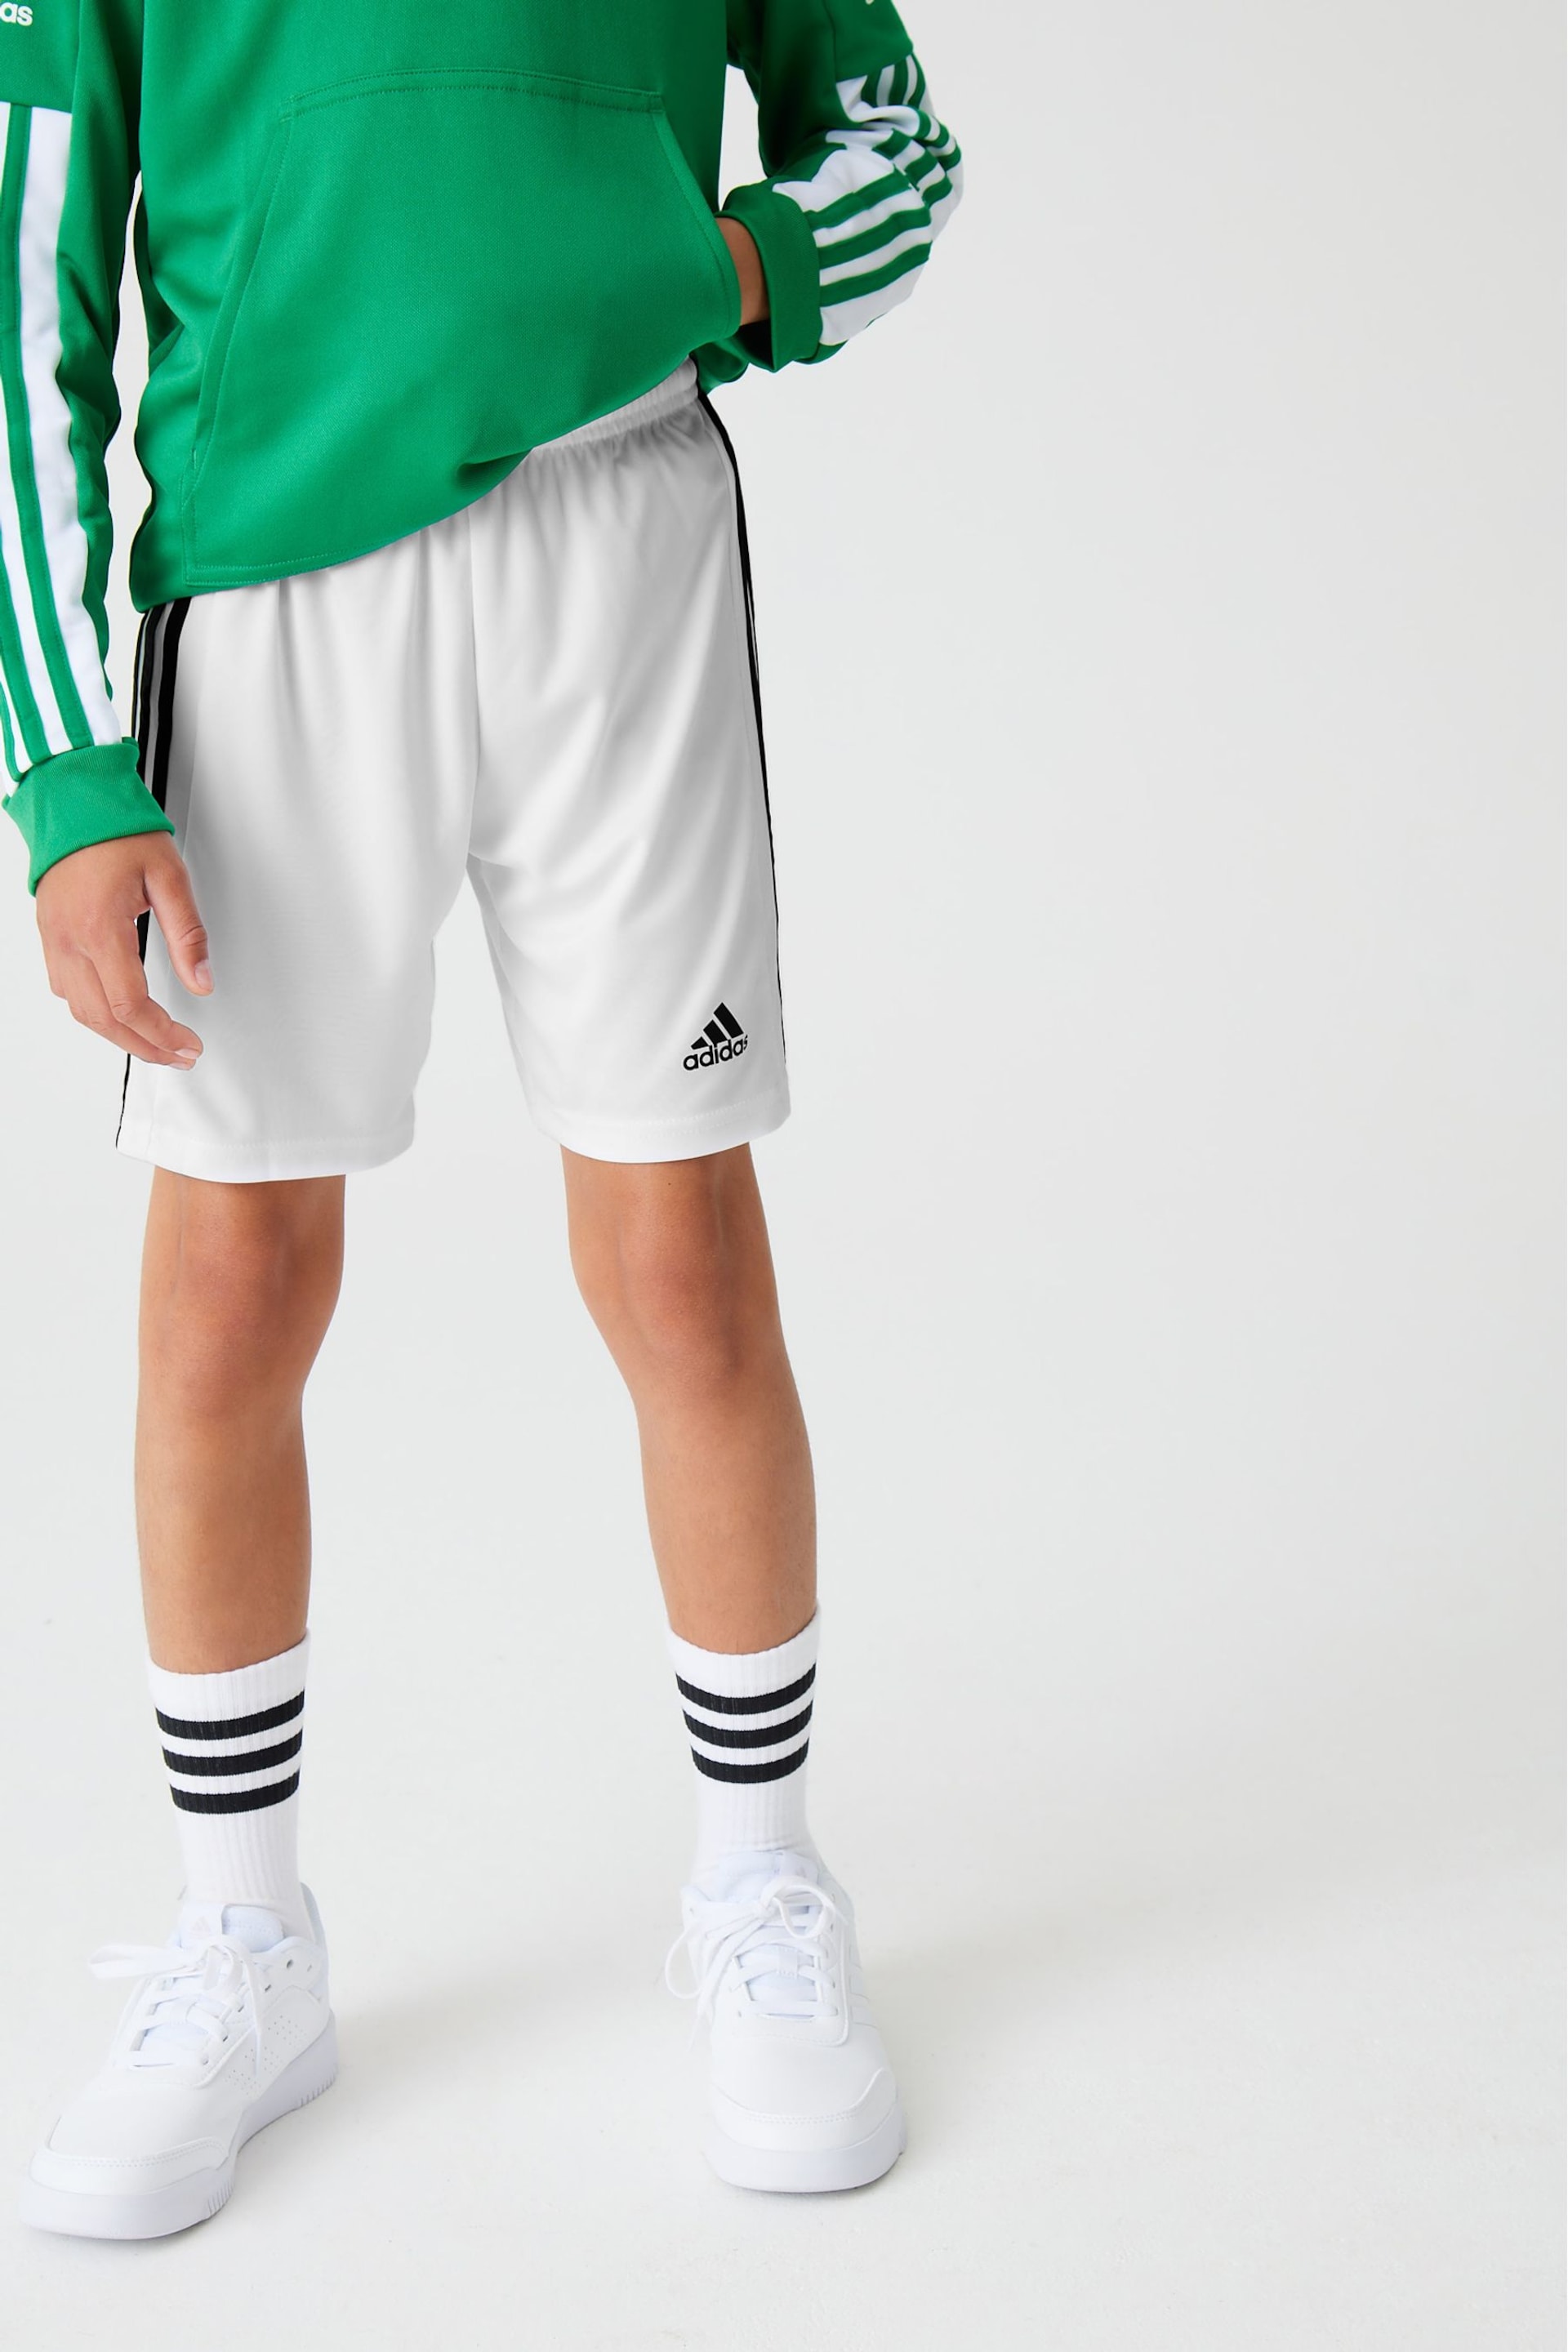 adidas White Squadra 21 Shorts - Image 1 of 10